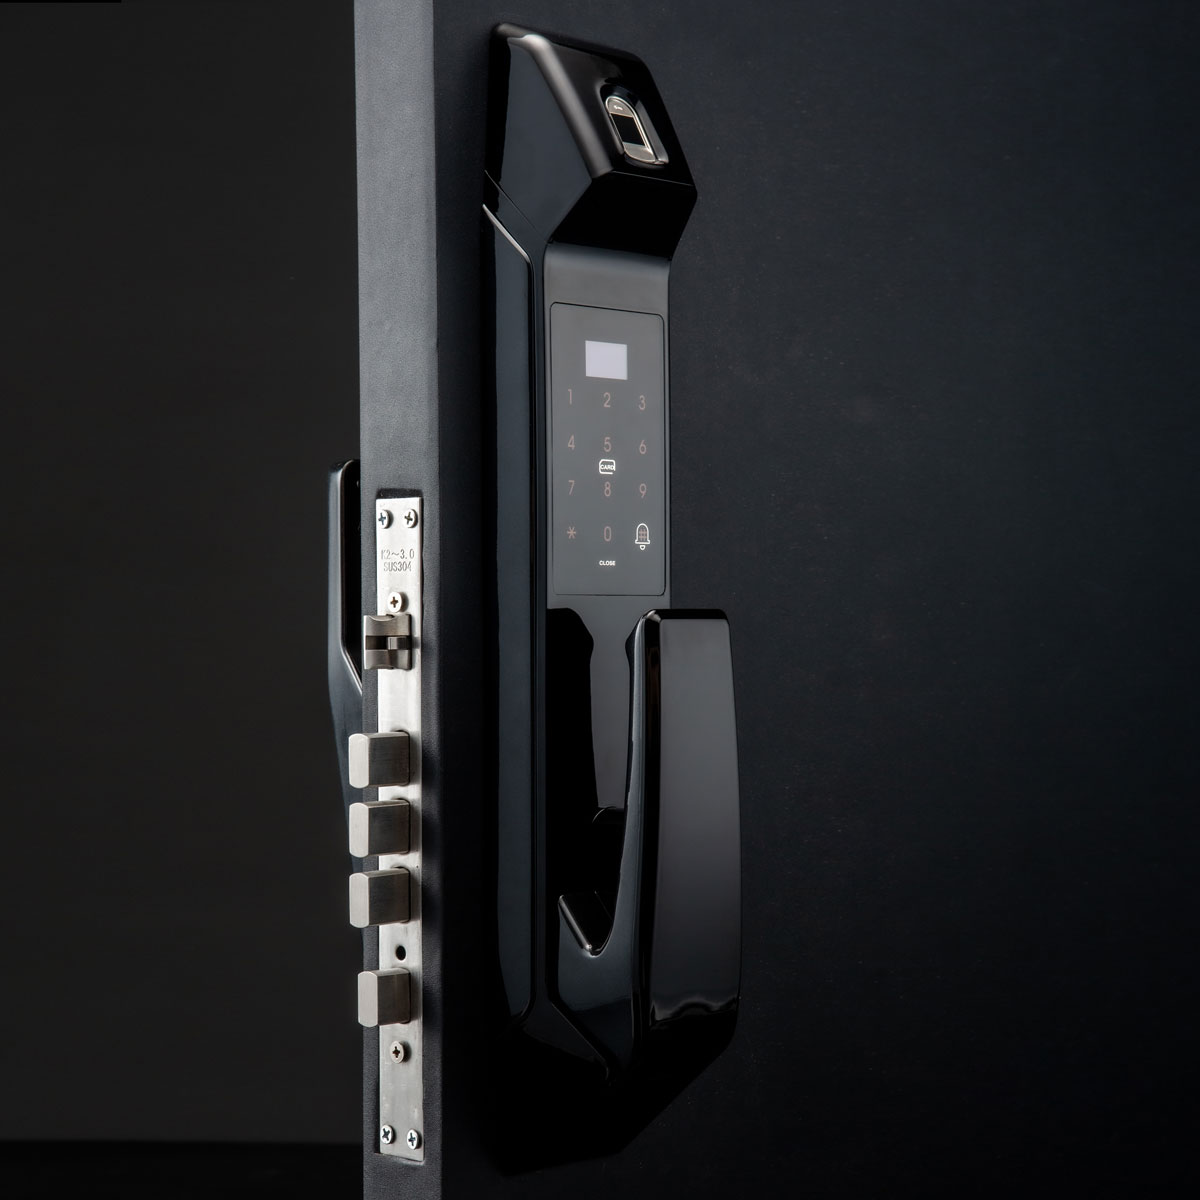 1575107855 956 Terncy Introduce HomeKit Smart Lock to Their Range – Homekit